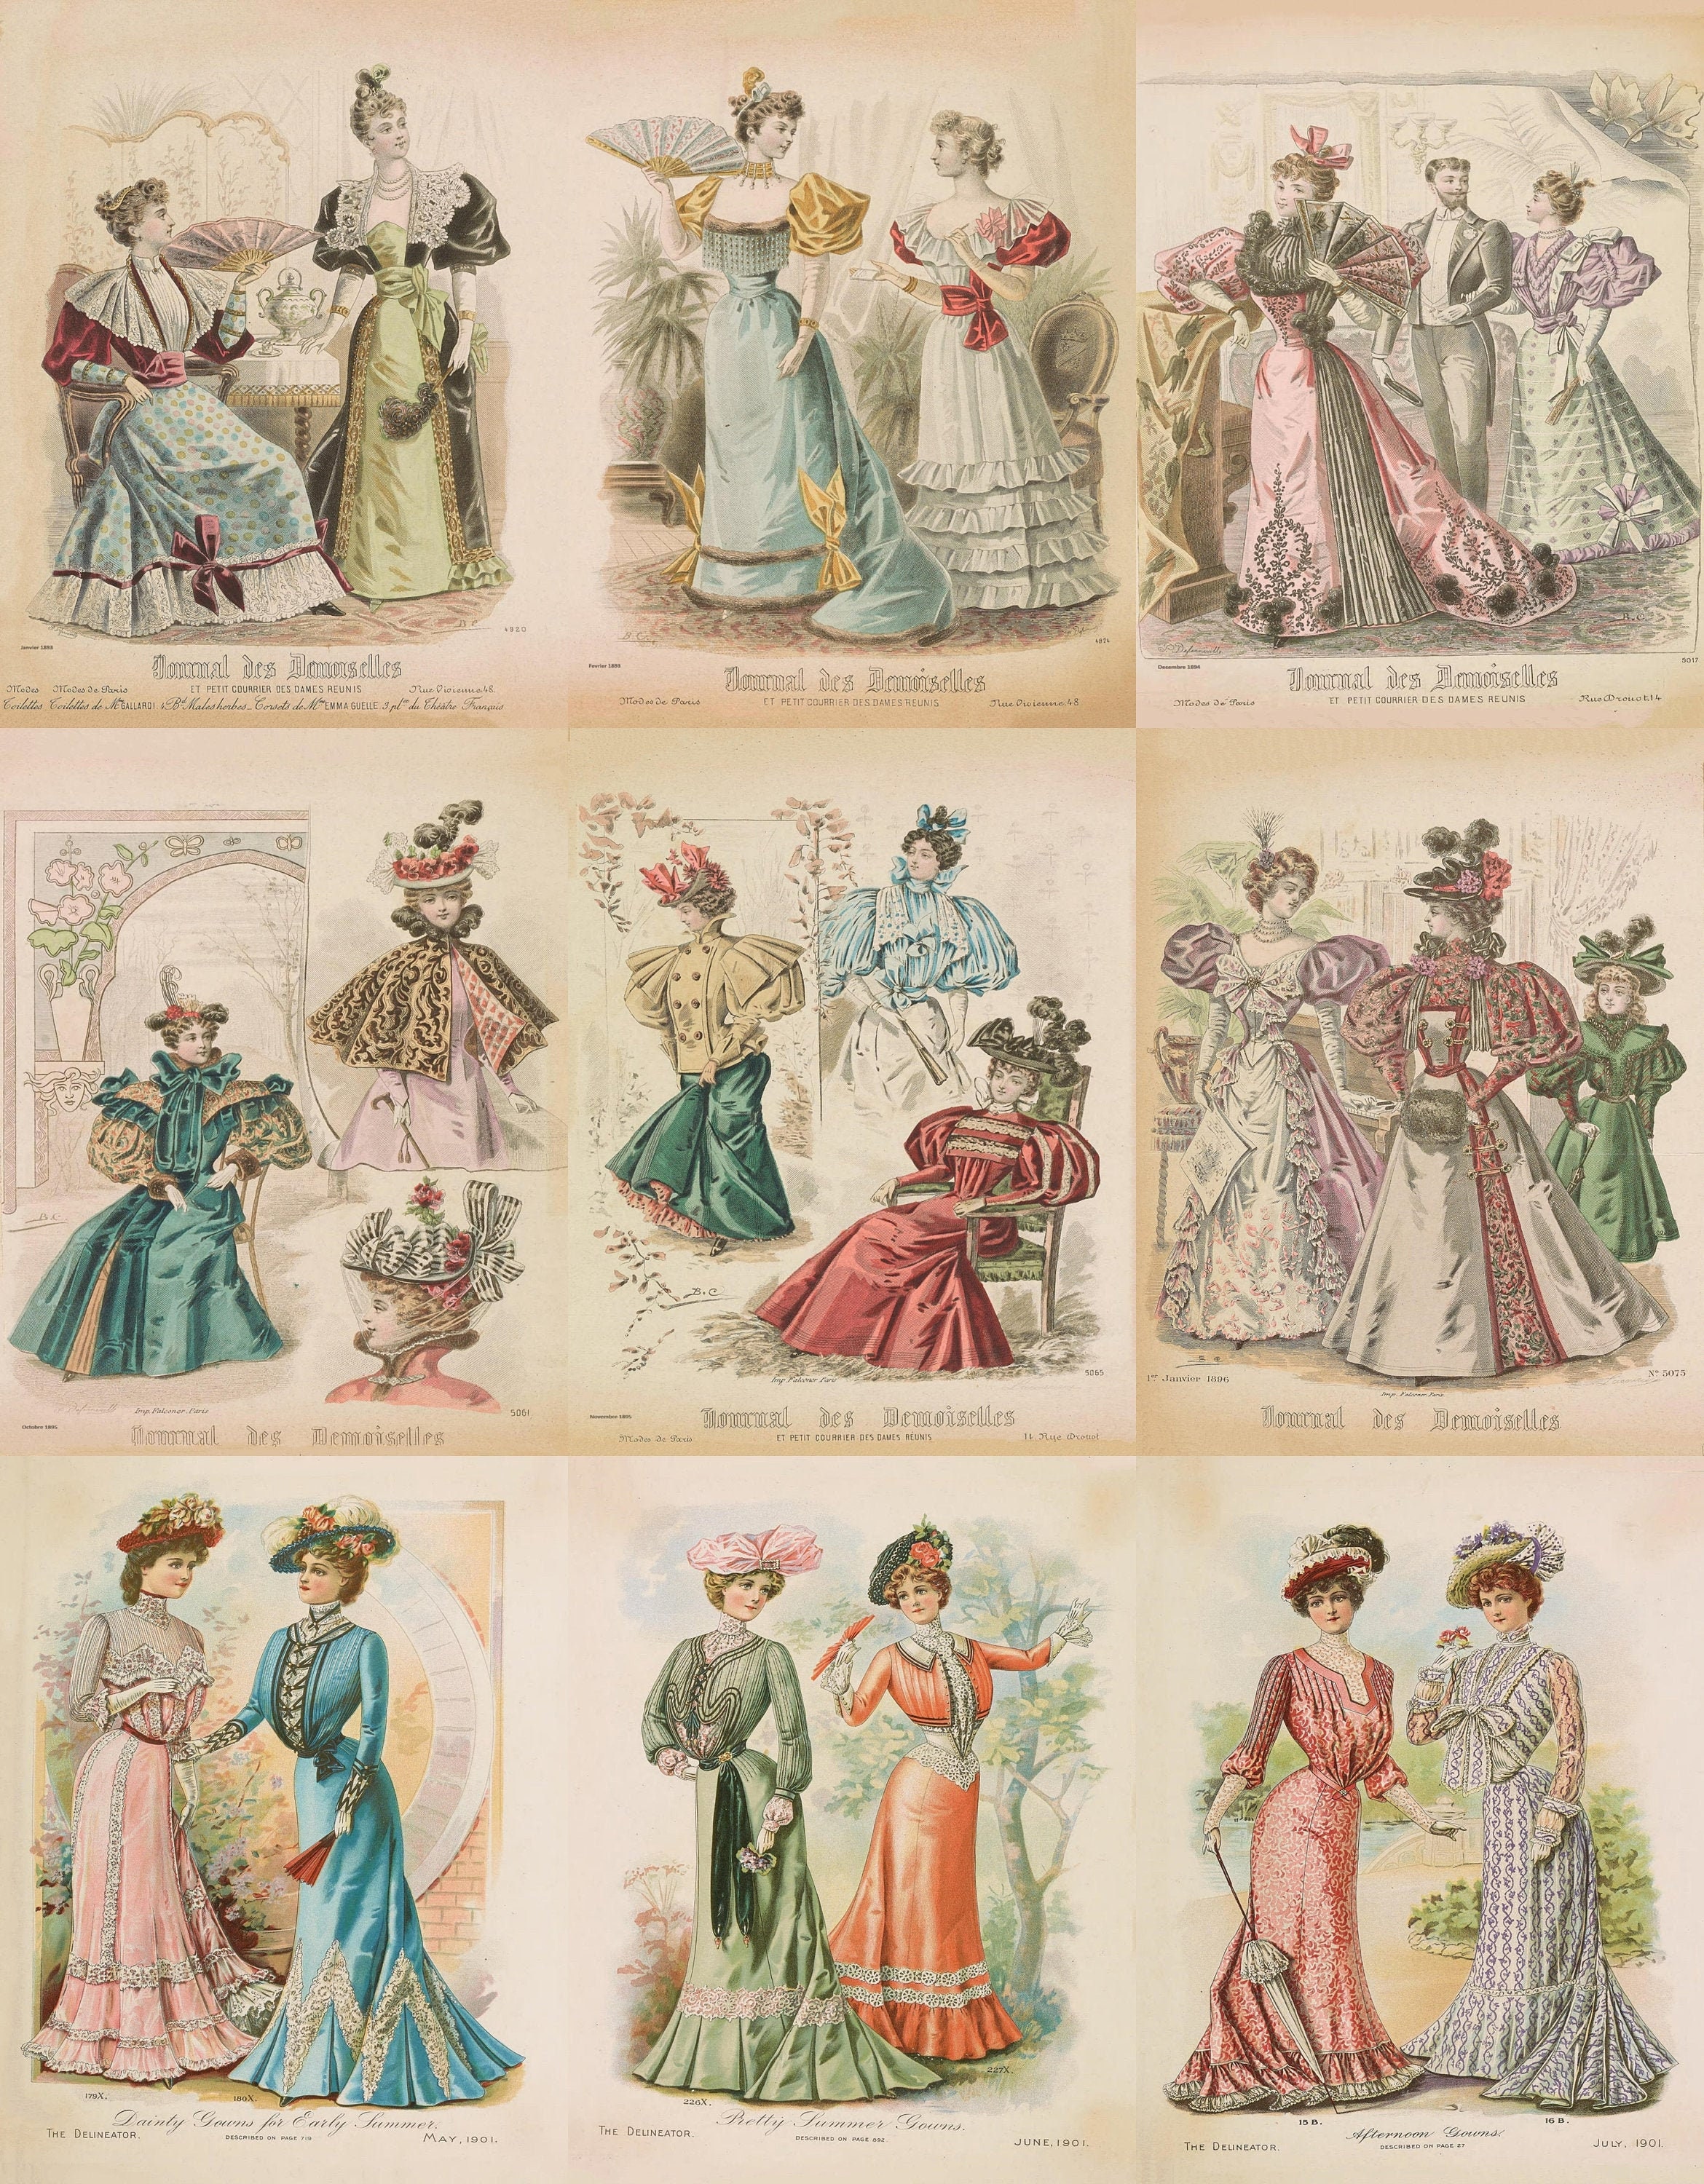 1830s Replica Cotton Print Gown -  Canada